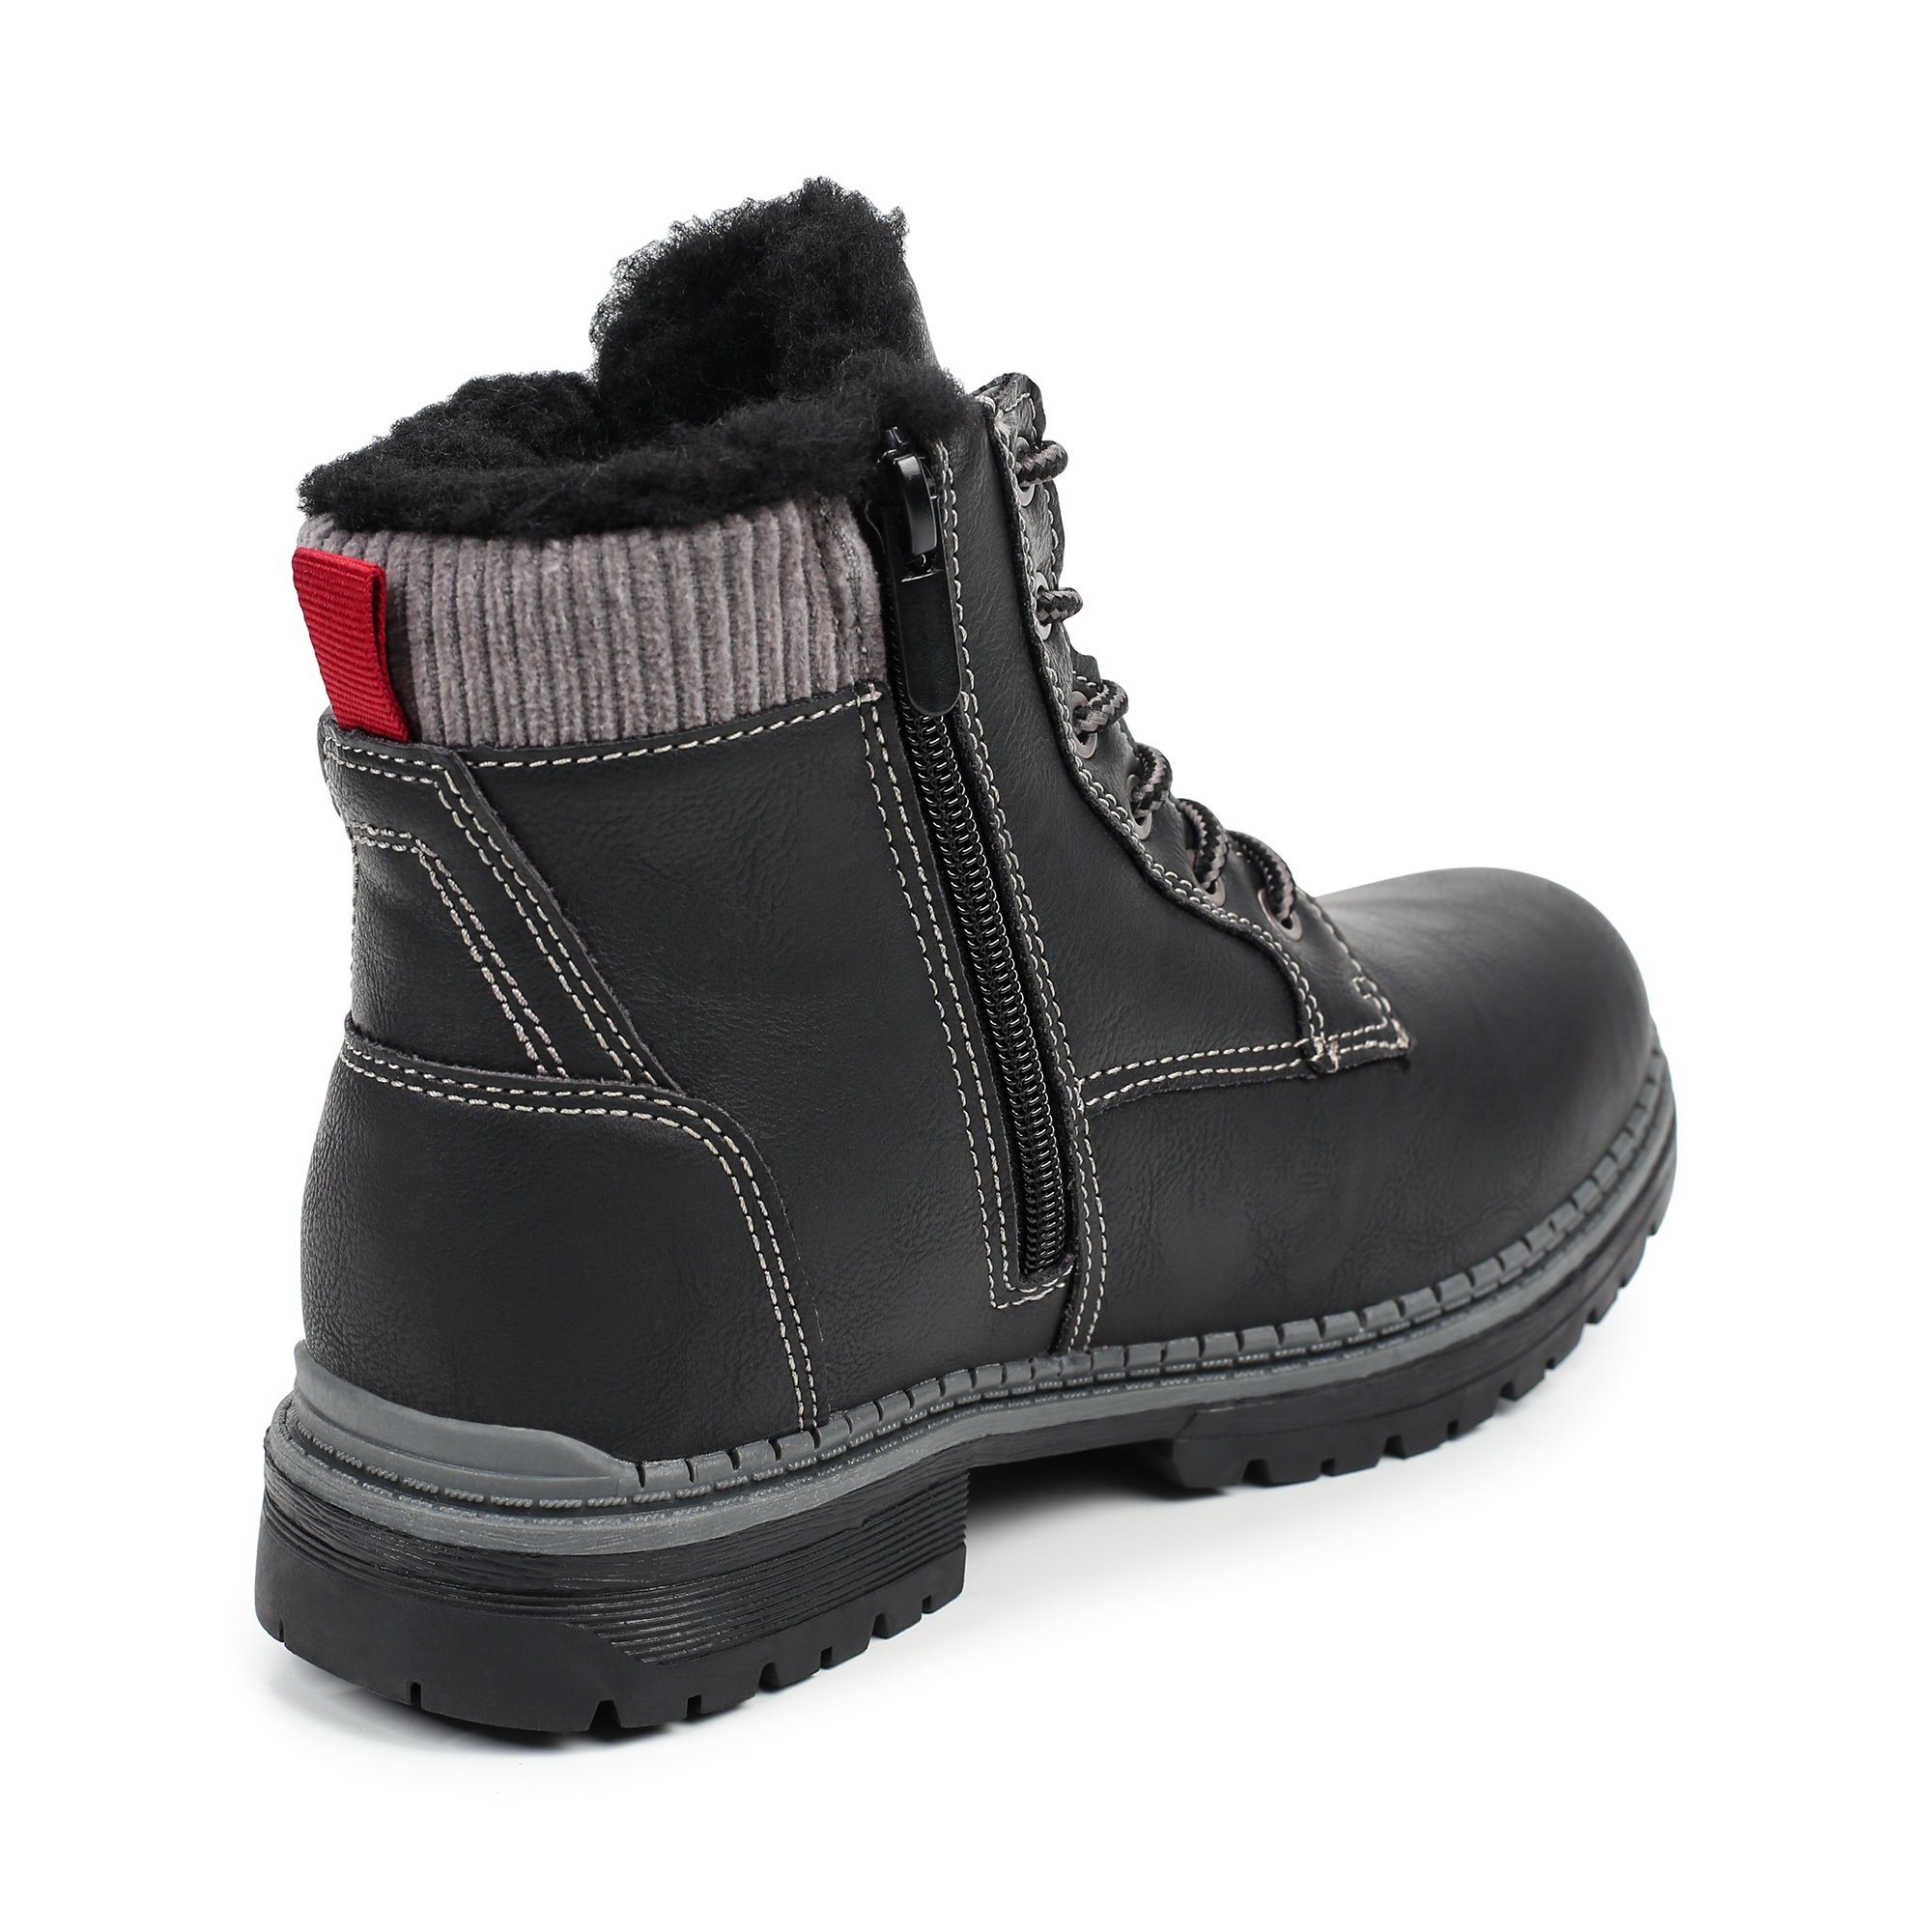 Обувь для мальчиков MUNZ YOUNG 018-033B-5602, цвет черный, размер 35 - фото 3